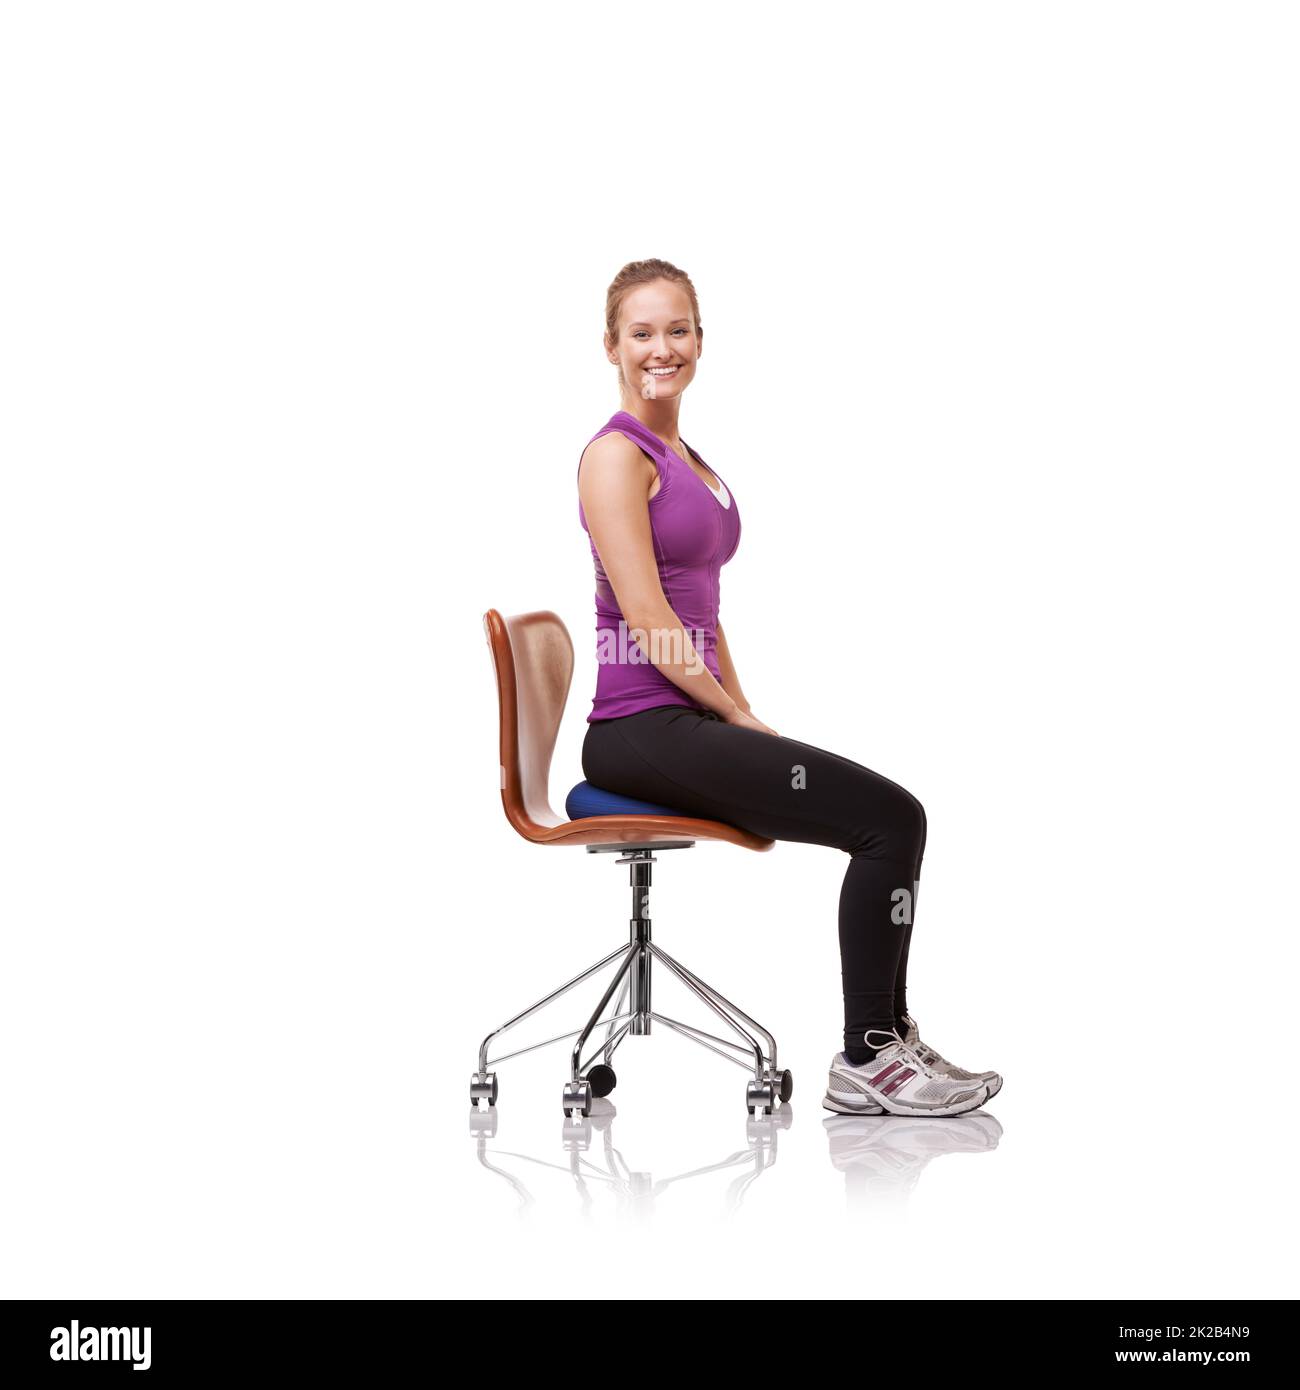 Perfecto para tu postura. Fotografía de una mujer deportiva que se estira en una silla. Foto de stock